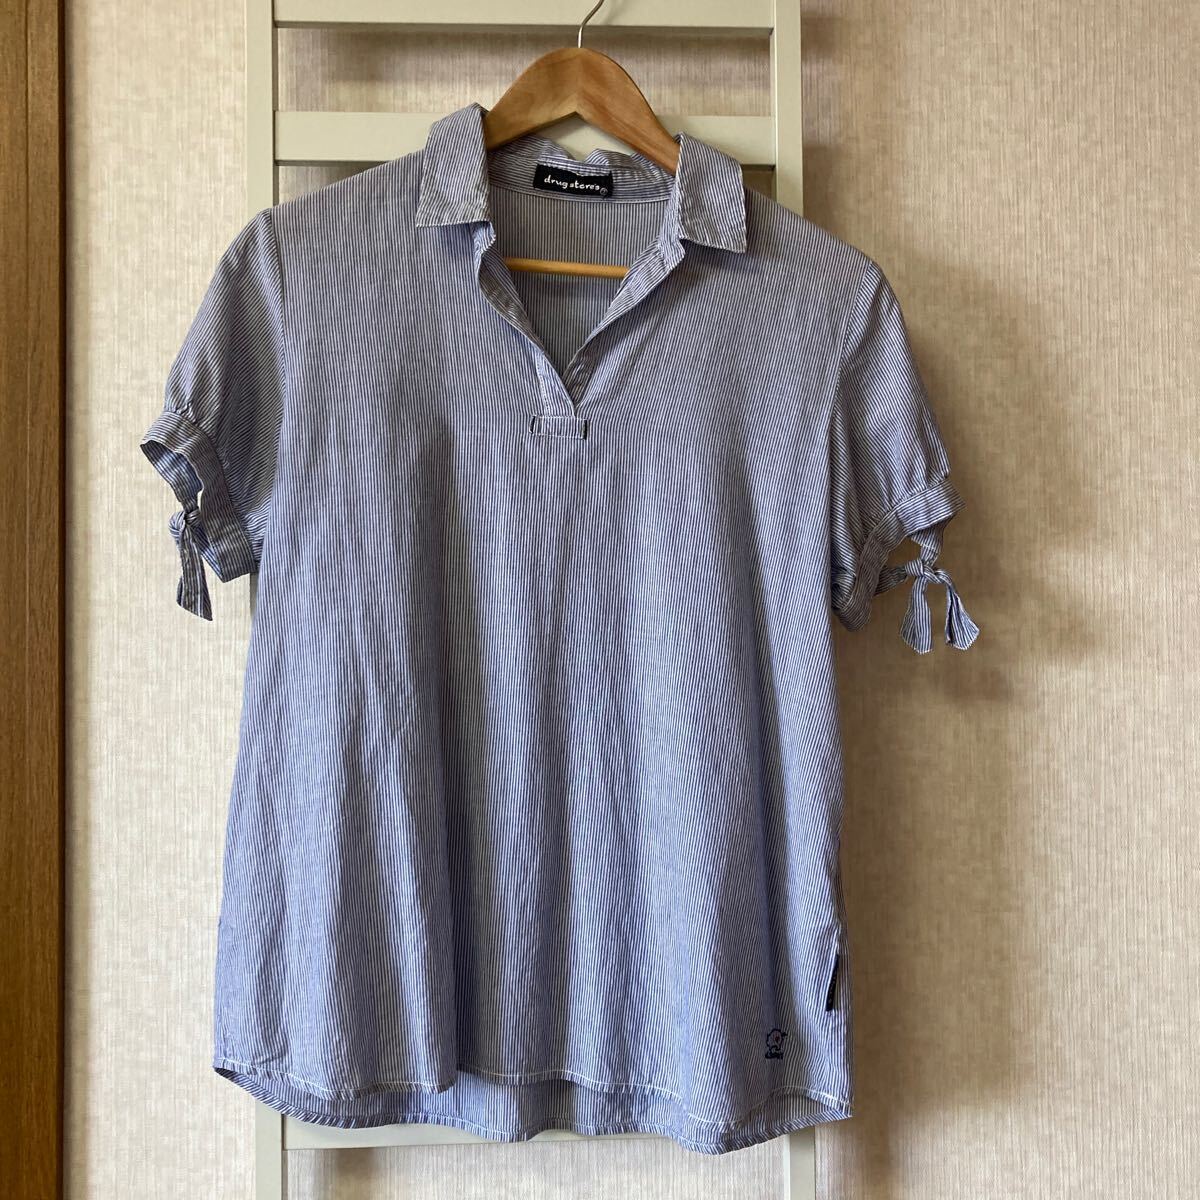 送料無料☆Drug Storesドラッグストアーズ ブルーストライプシャツ コットンシャツ 綿100% サイズ2の画像1